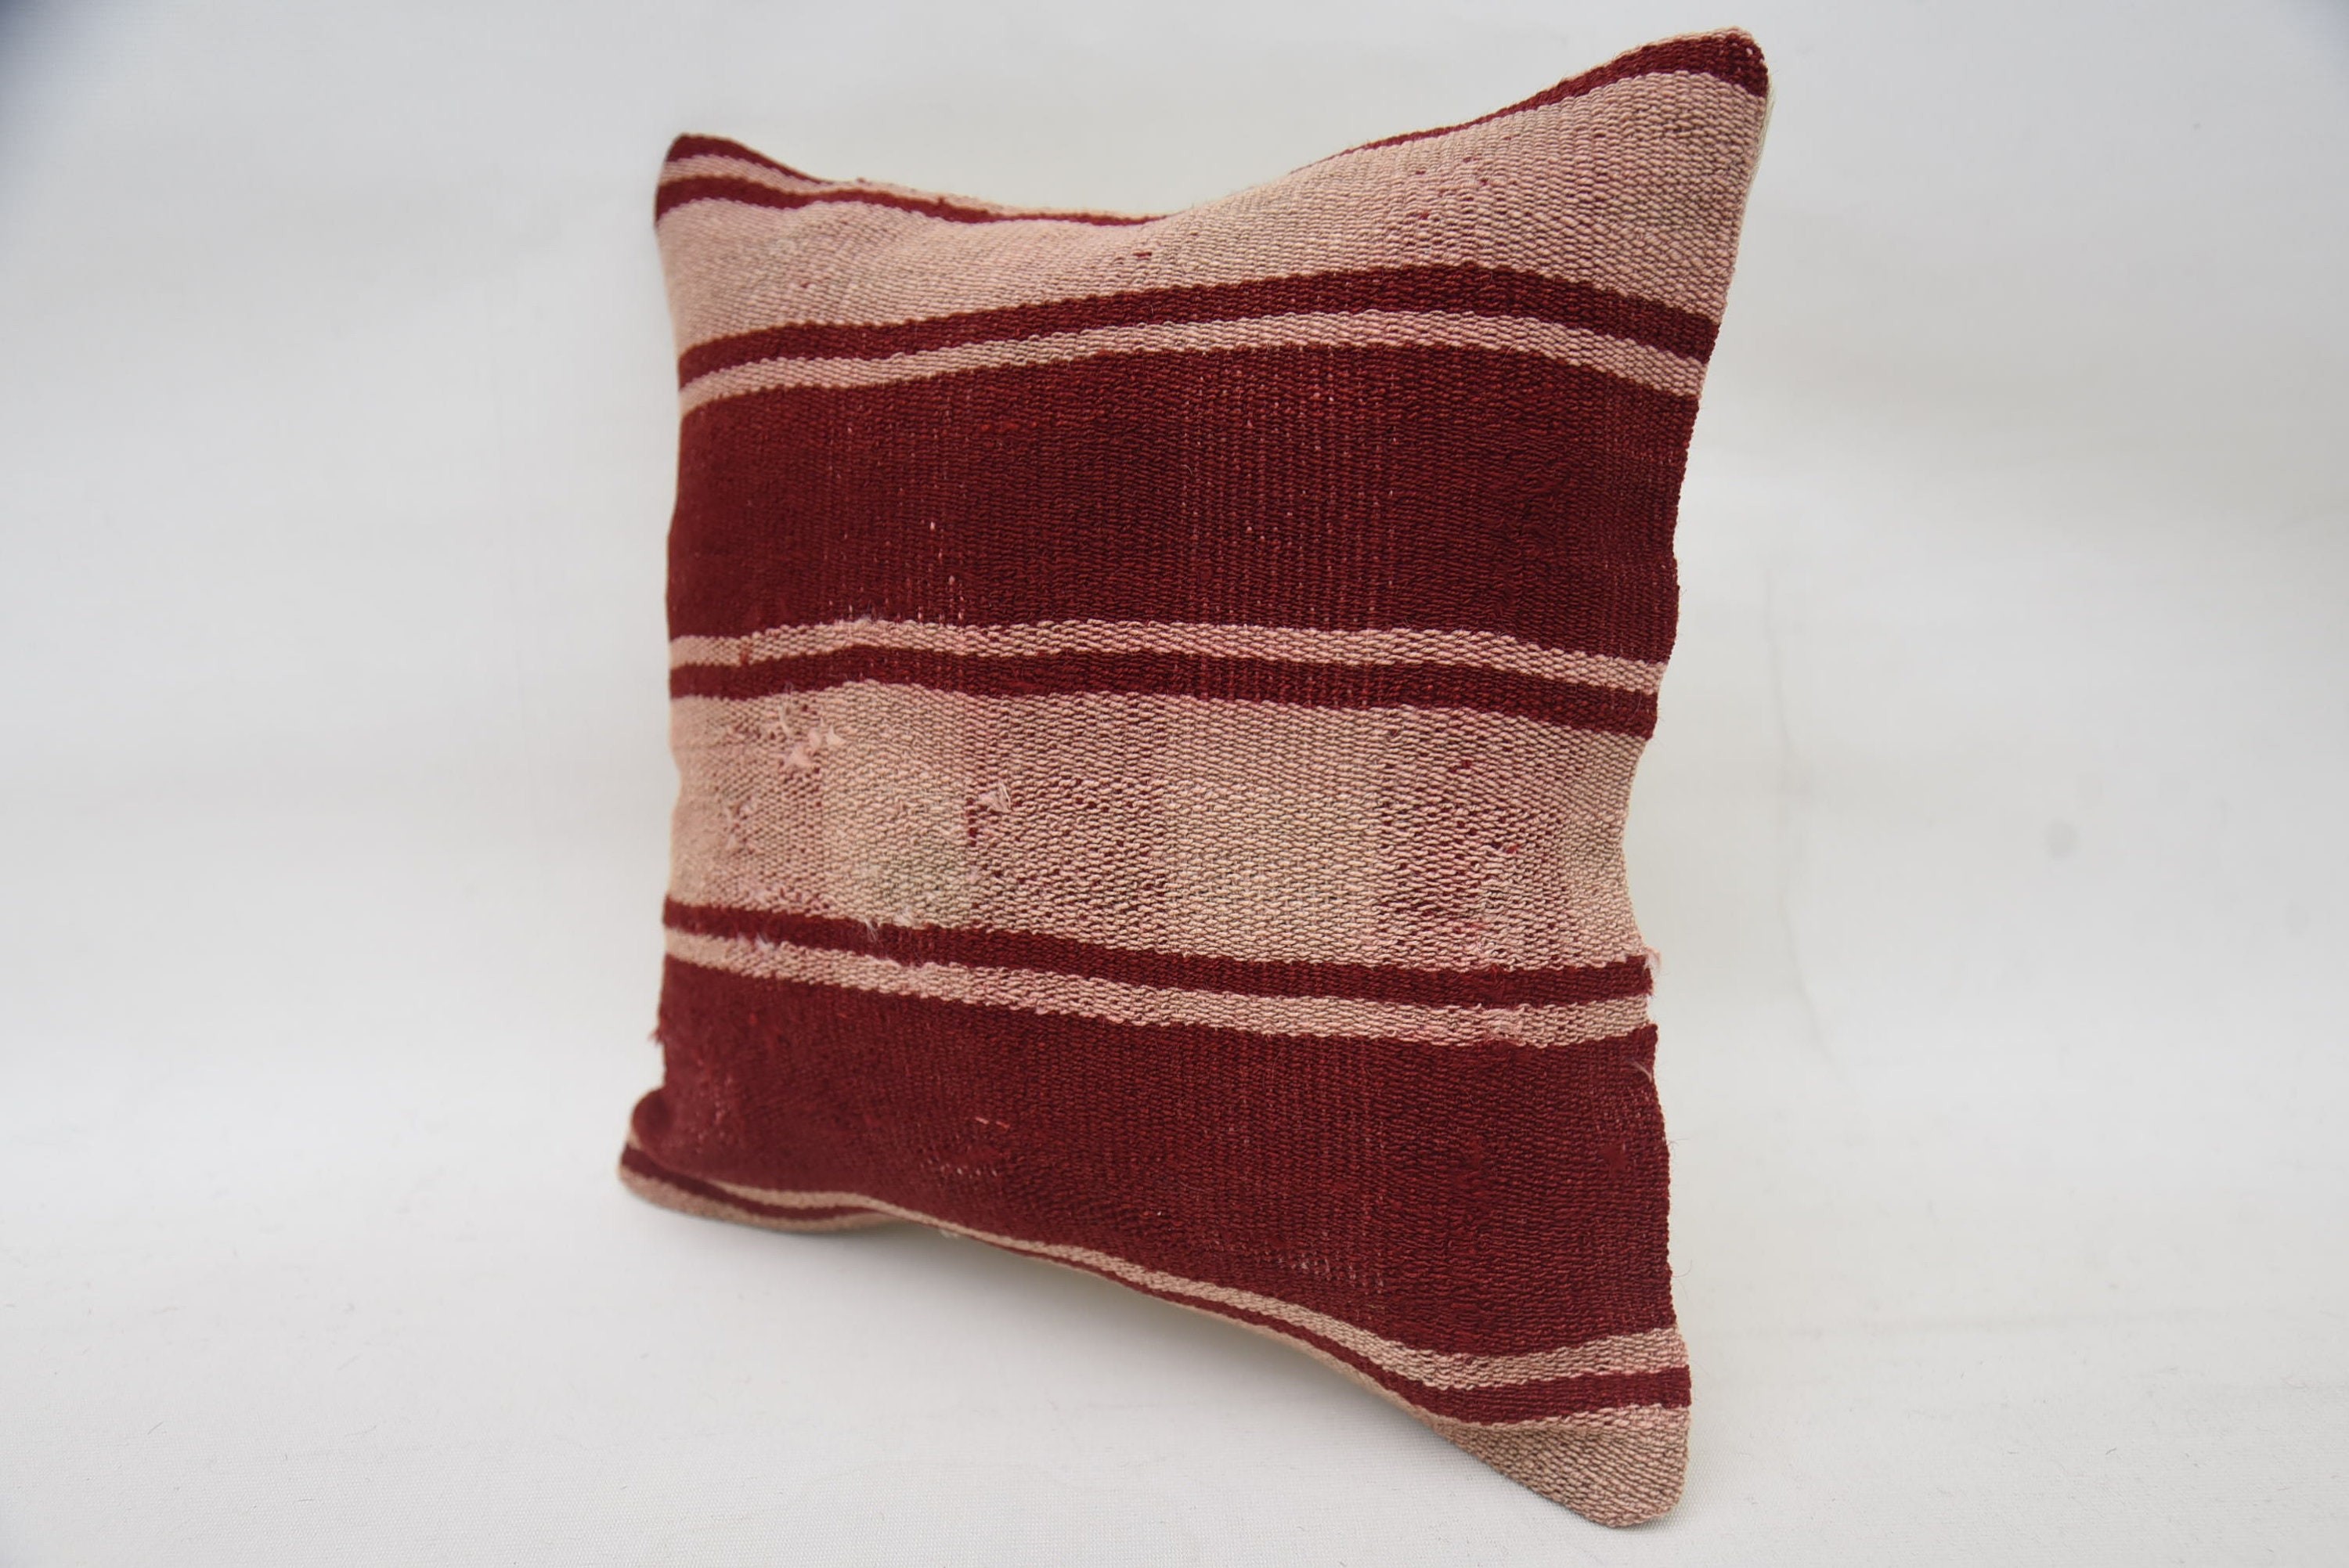 Antique Pillows, Hippie Throw Cushion Case, Ethnical Kilim Rug Pillow, 14"x14" Red Cushion Cover, Boho Pillow Sham Cover